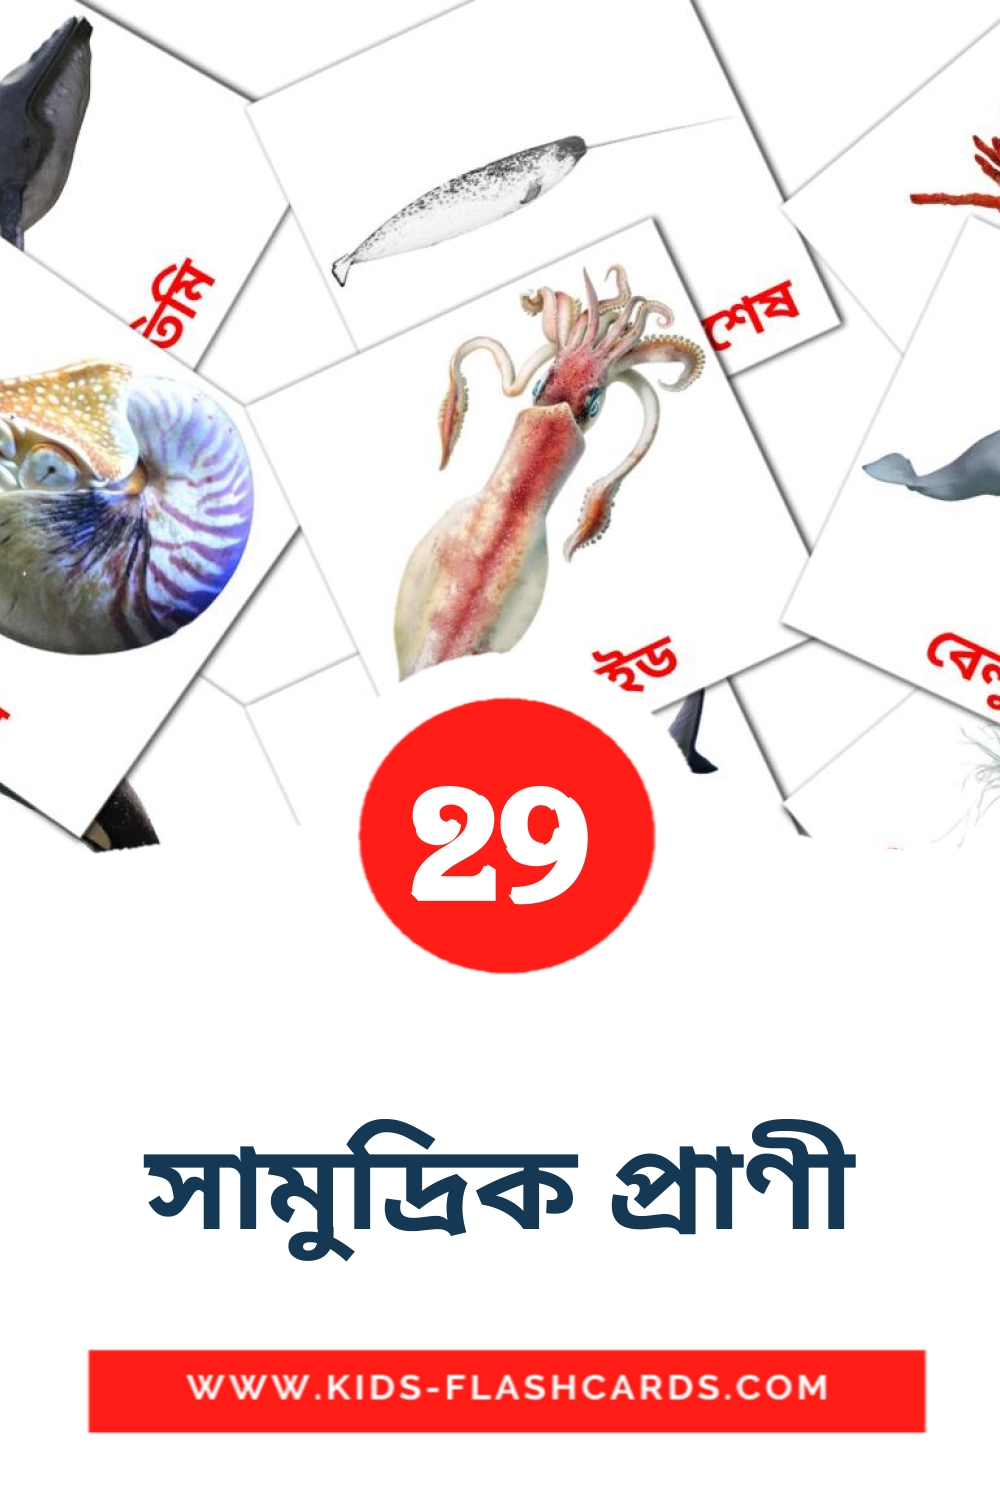 29 সামুদ্রিক প্রাণী fotokaarten voor kleuters in het bengaals